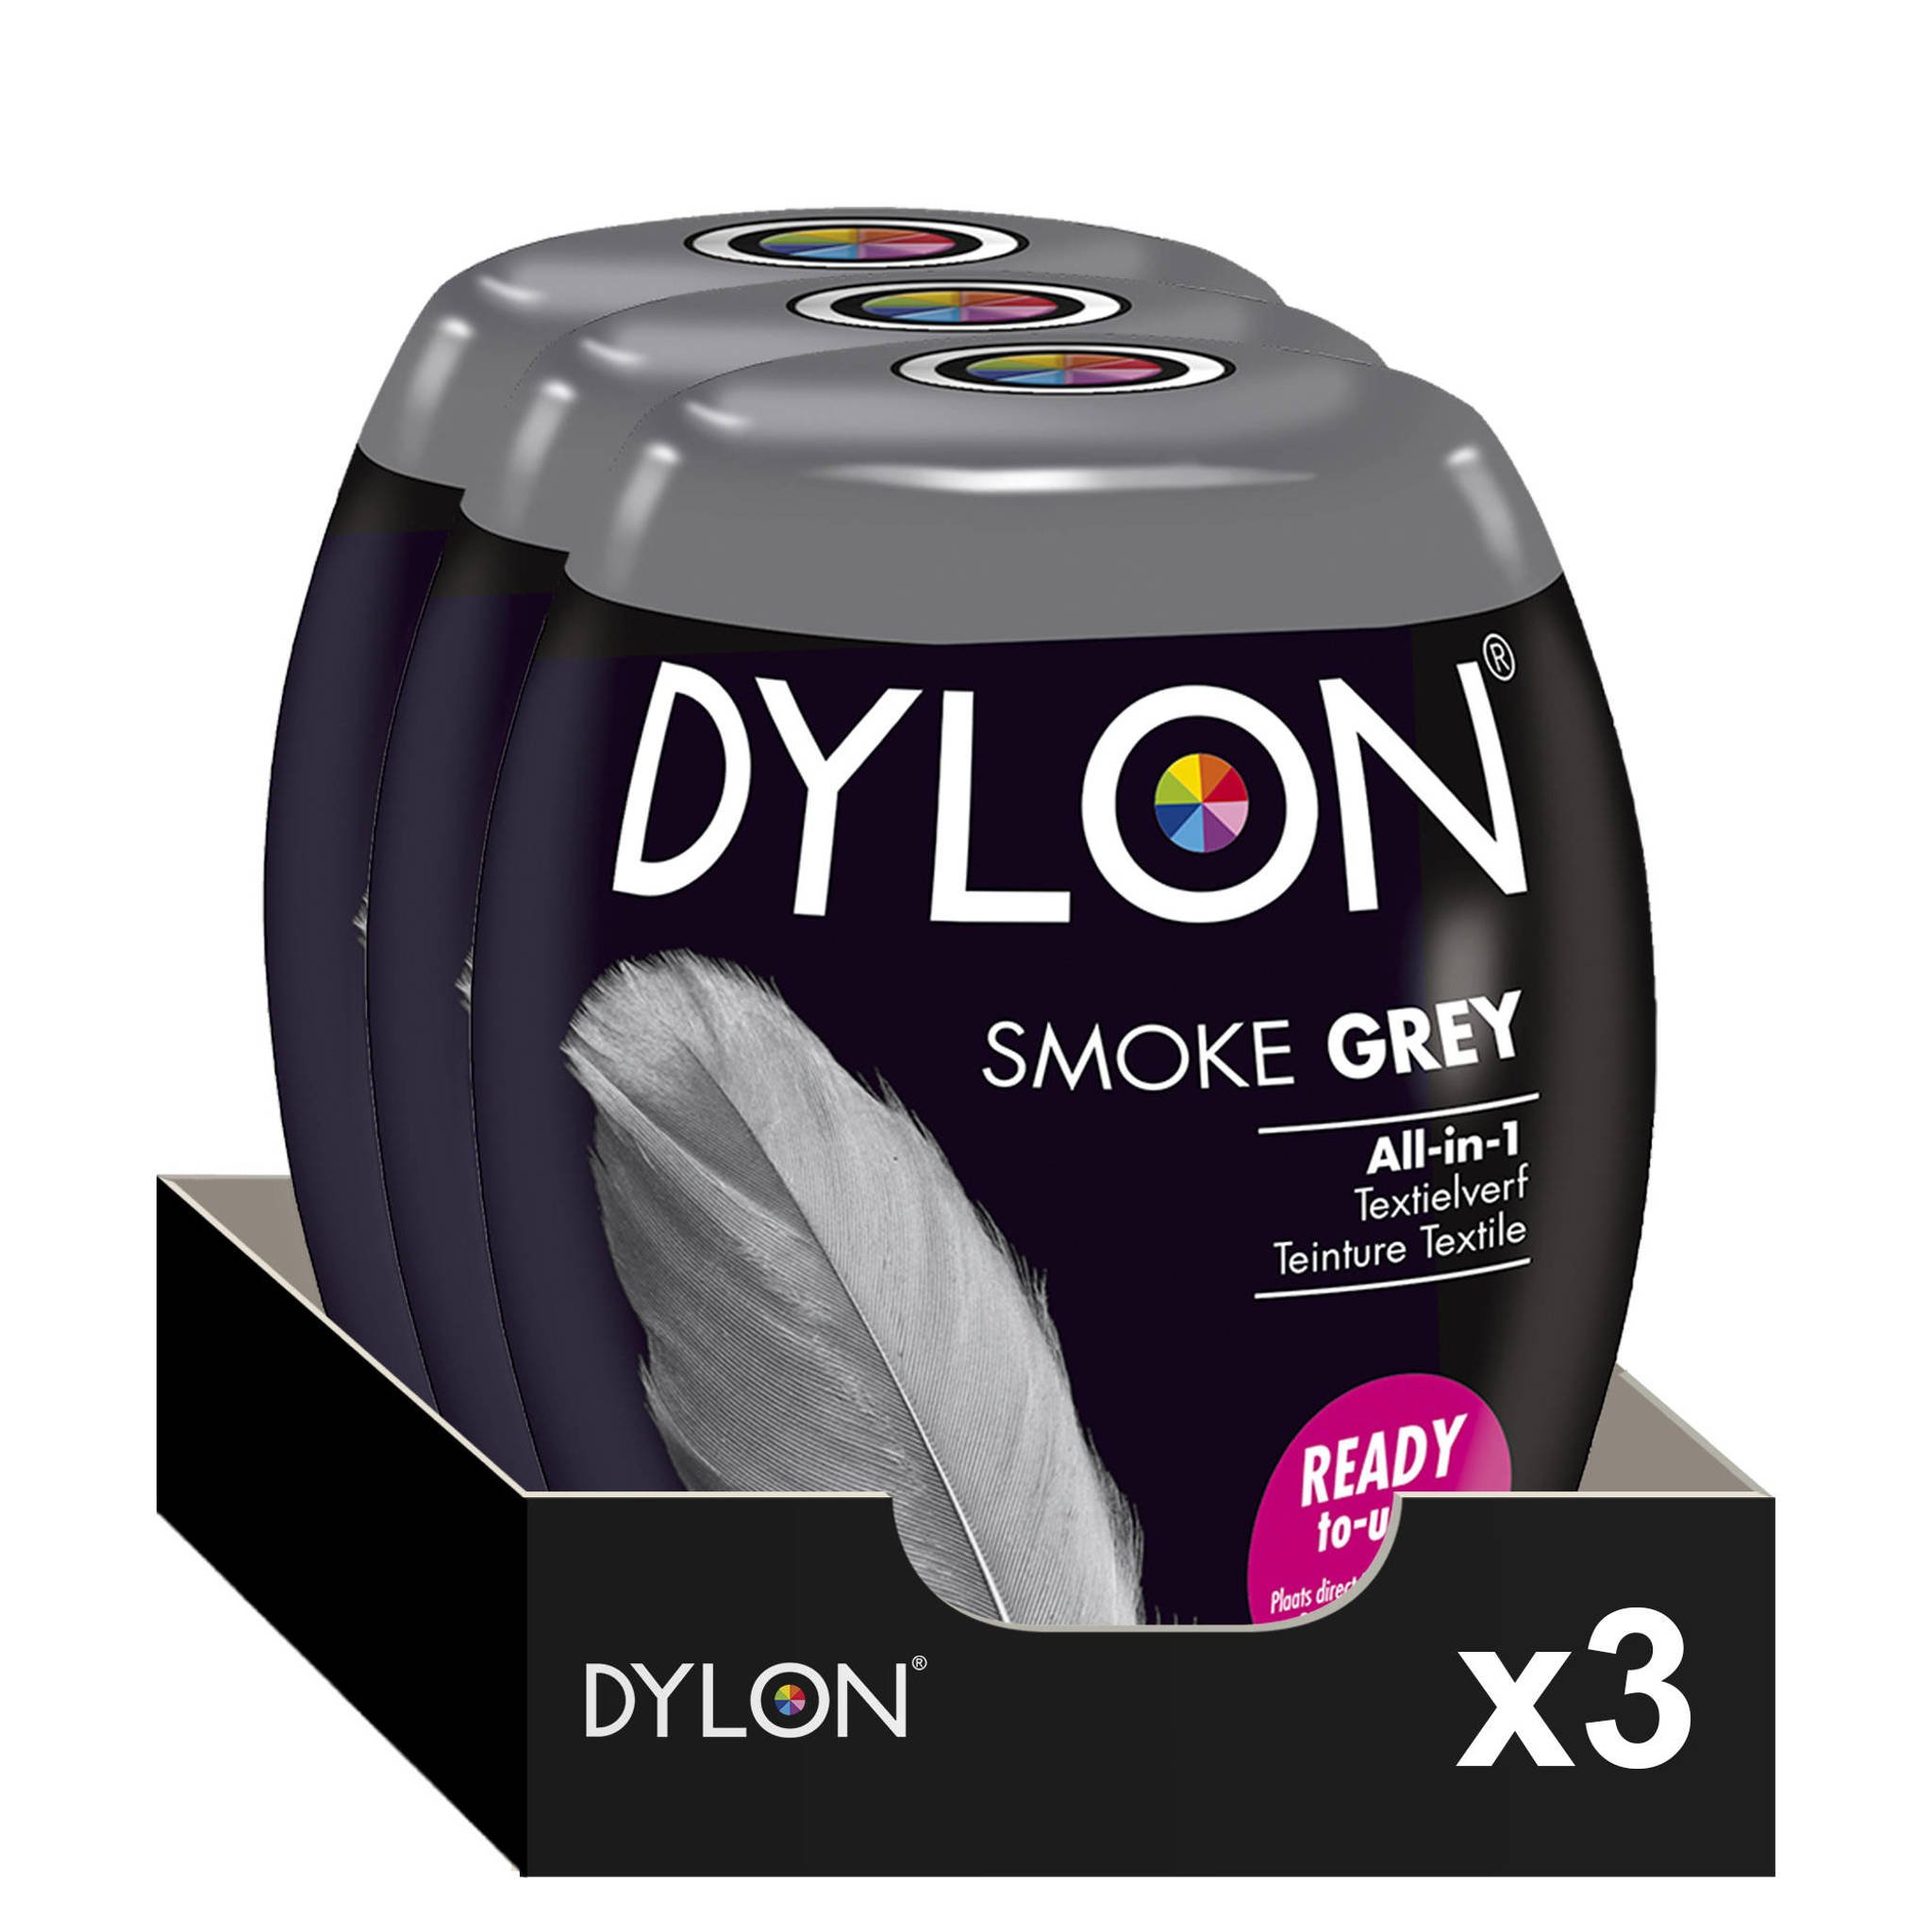 heb vertrouwen Kwestie Elektricien Dylon Pod - Smoke Grey textielverf - 350 gram | wehkamp